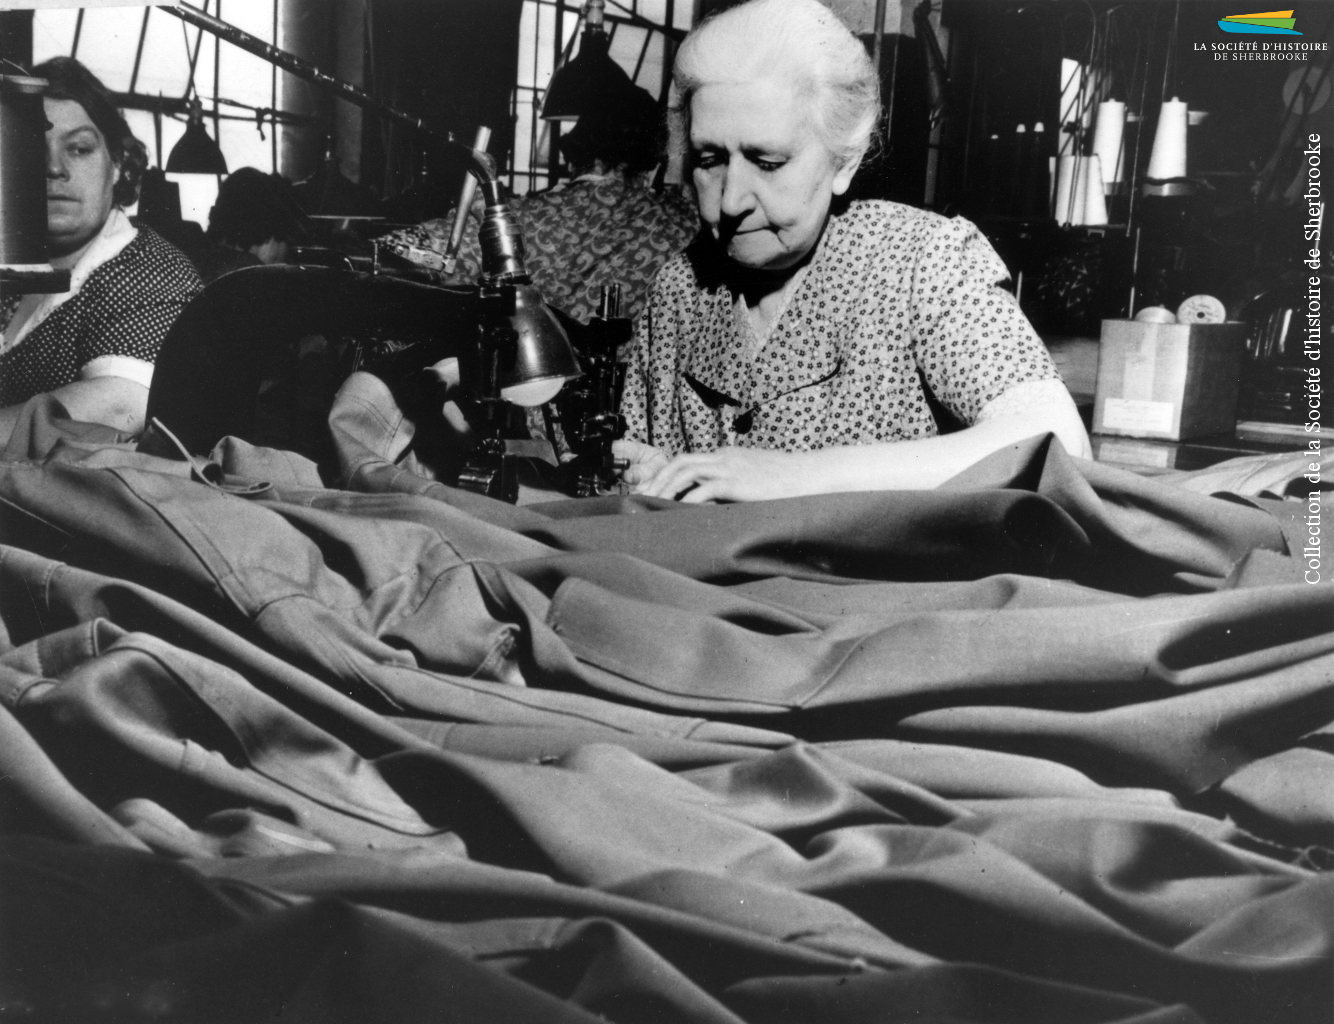 Des femmes travaillent à la confection d’uniformes, pendant la Seconde Guerre mondiale (1939-1945). À Sherbrooke, les manufactures de tissus (Paton, Dominion Textile) et de vêtements (S. Rubin Ltd) reçoivent de telles commandes du gouvernement canadien.